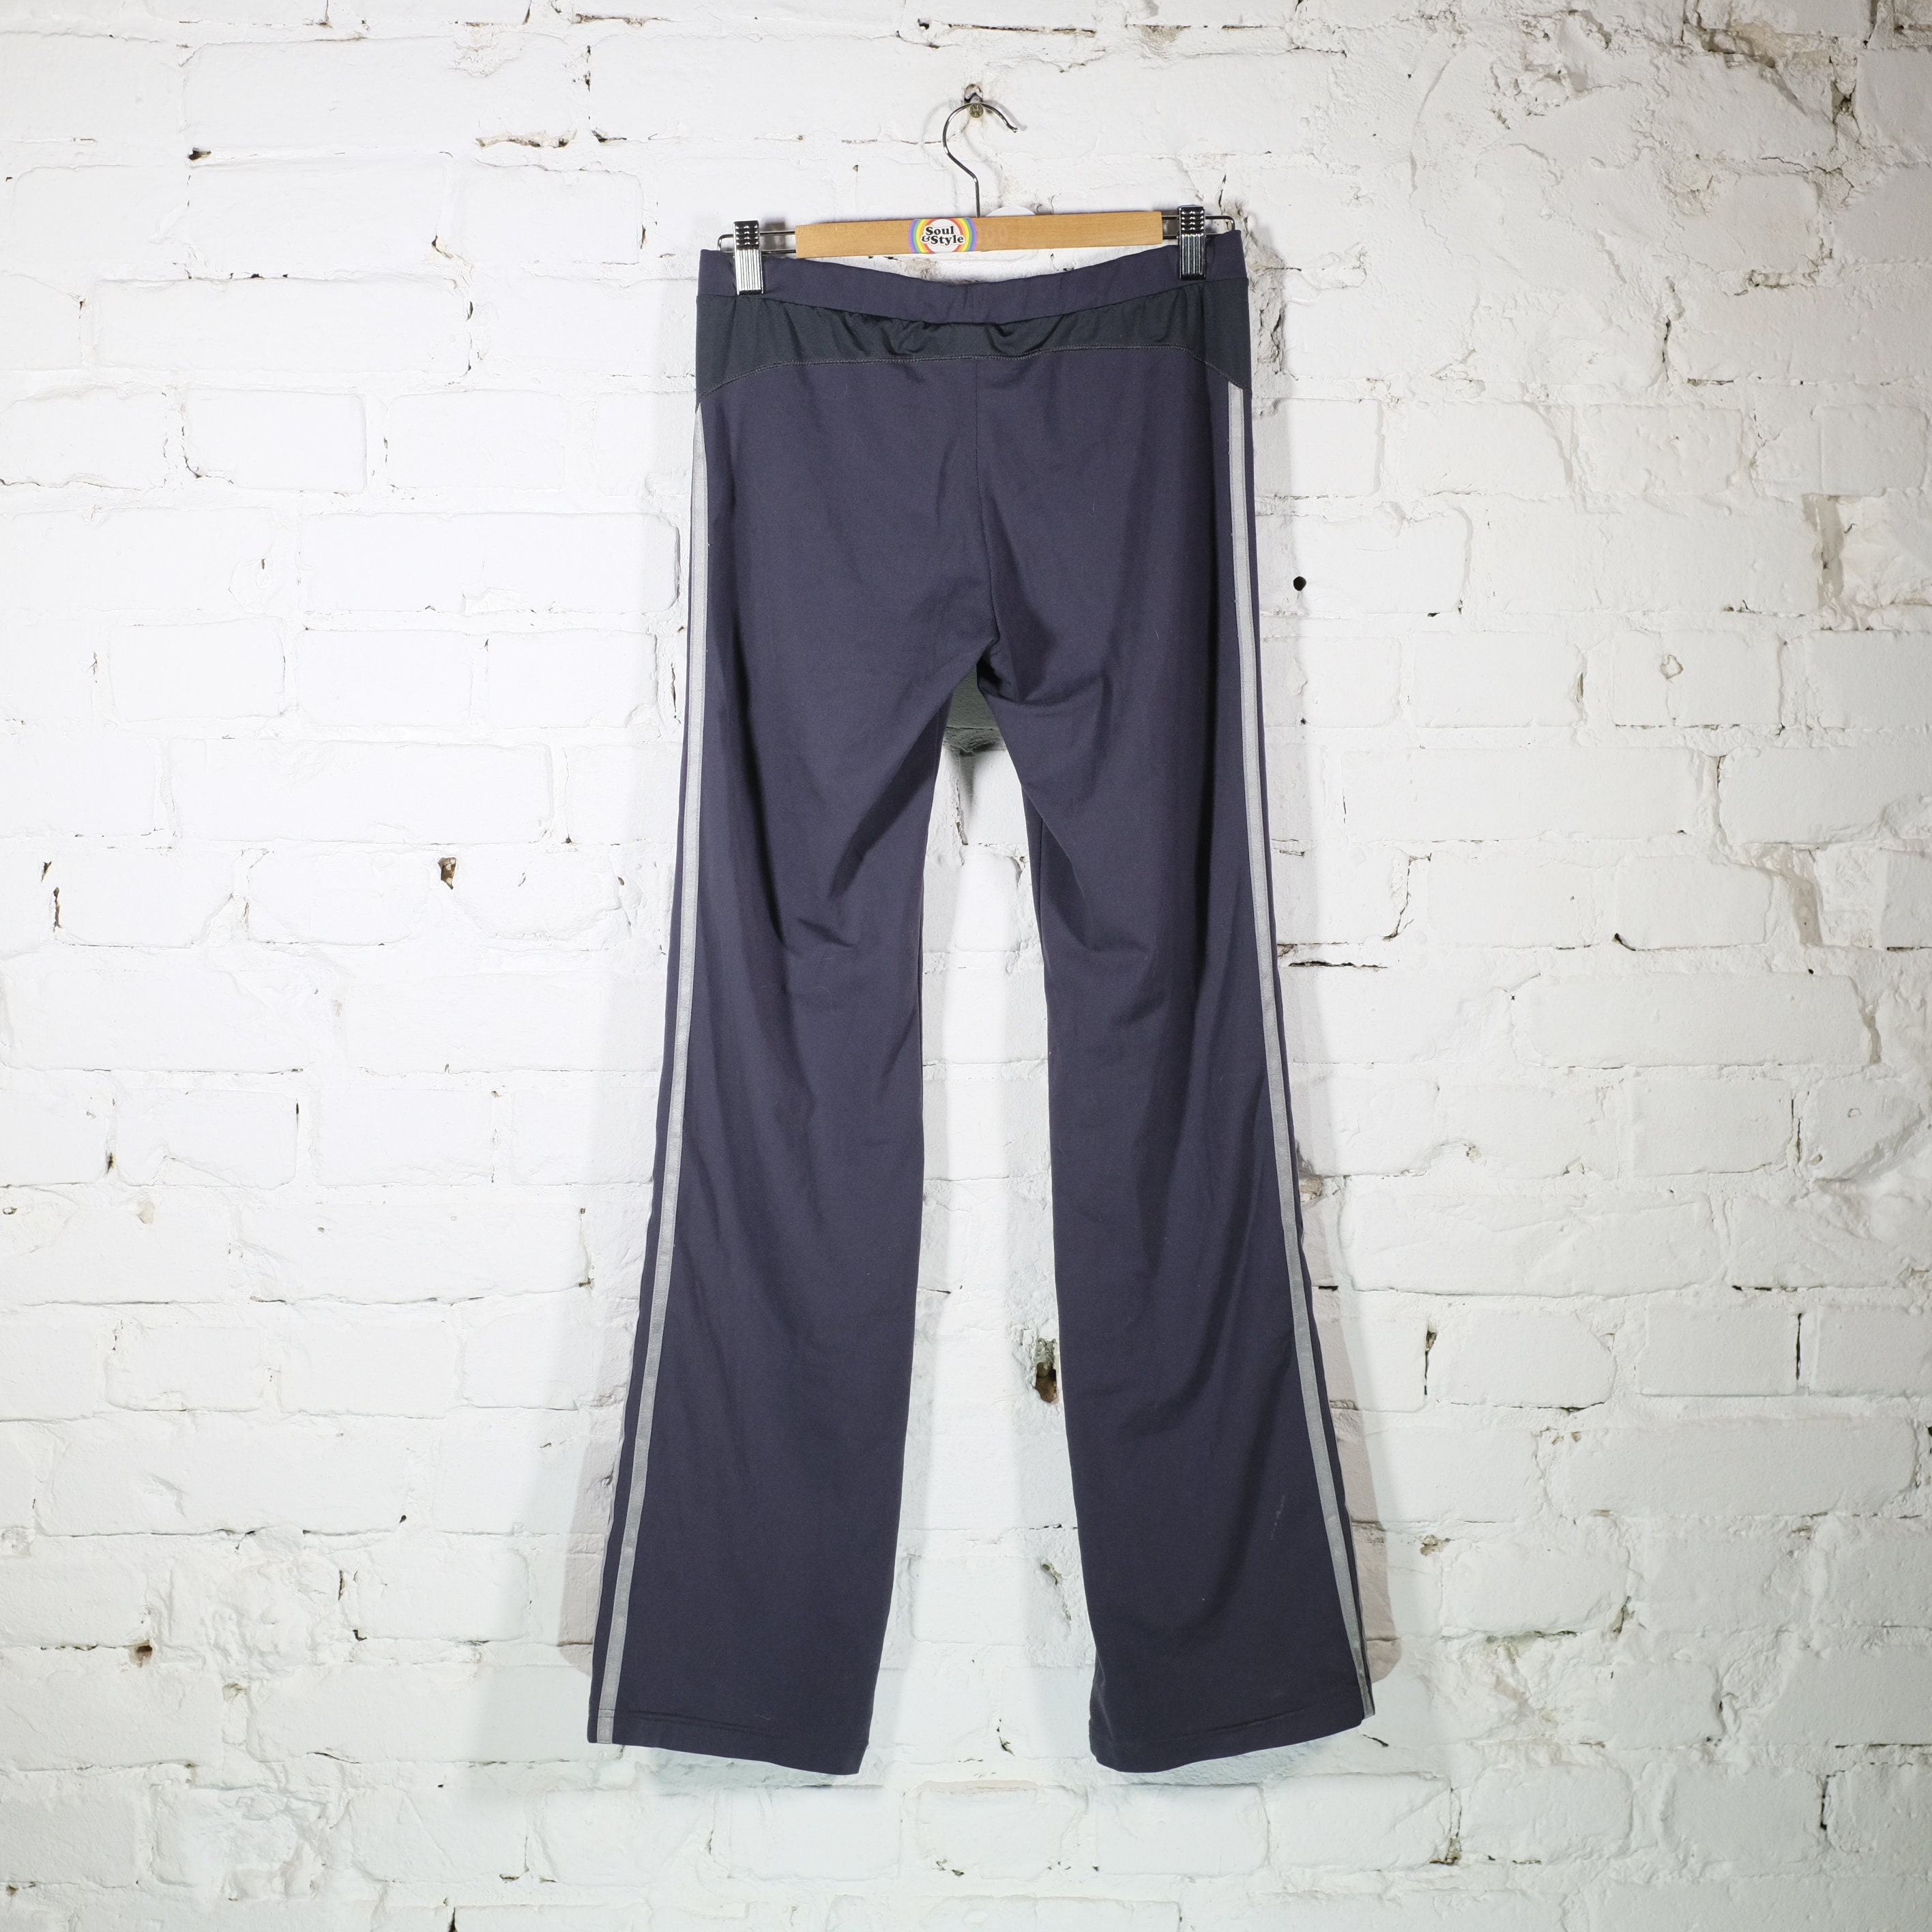 Pantalones deportivos vintage de los años 90 talla cintura de